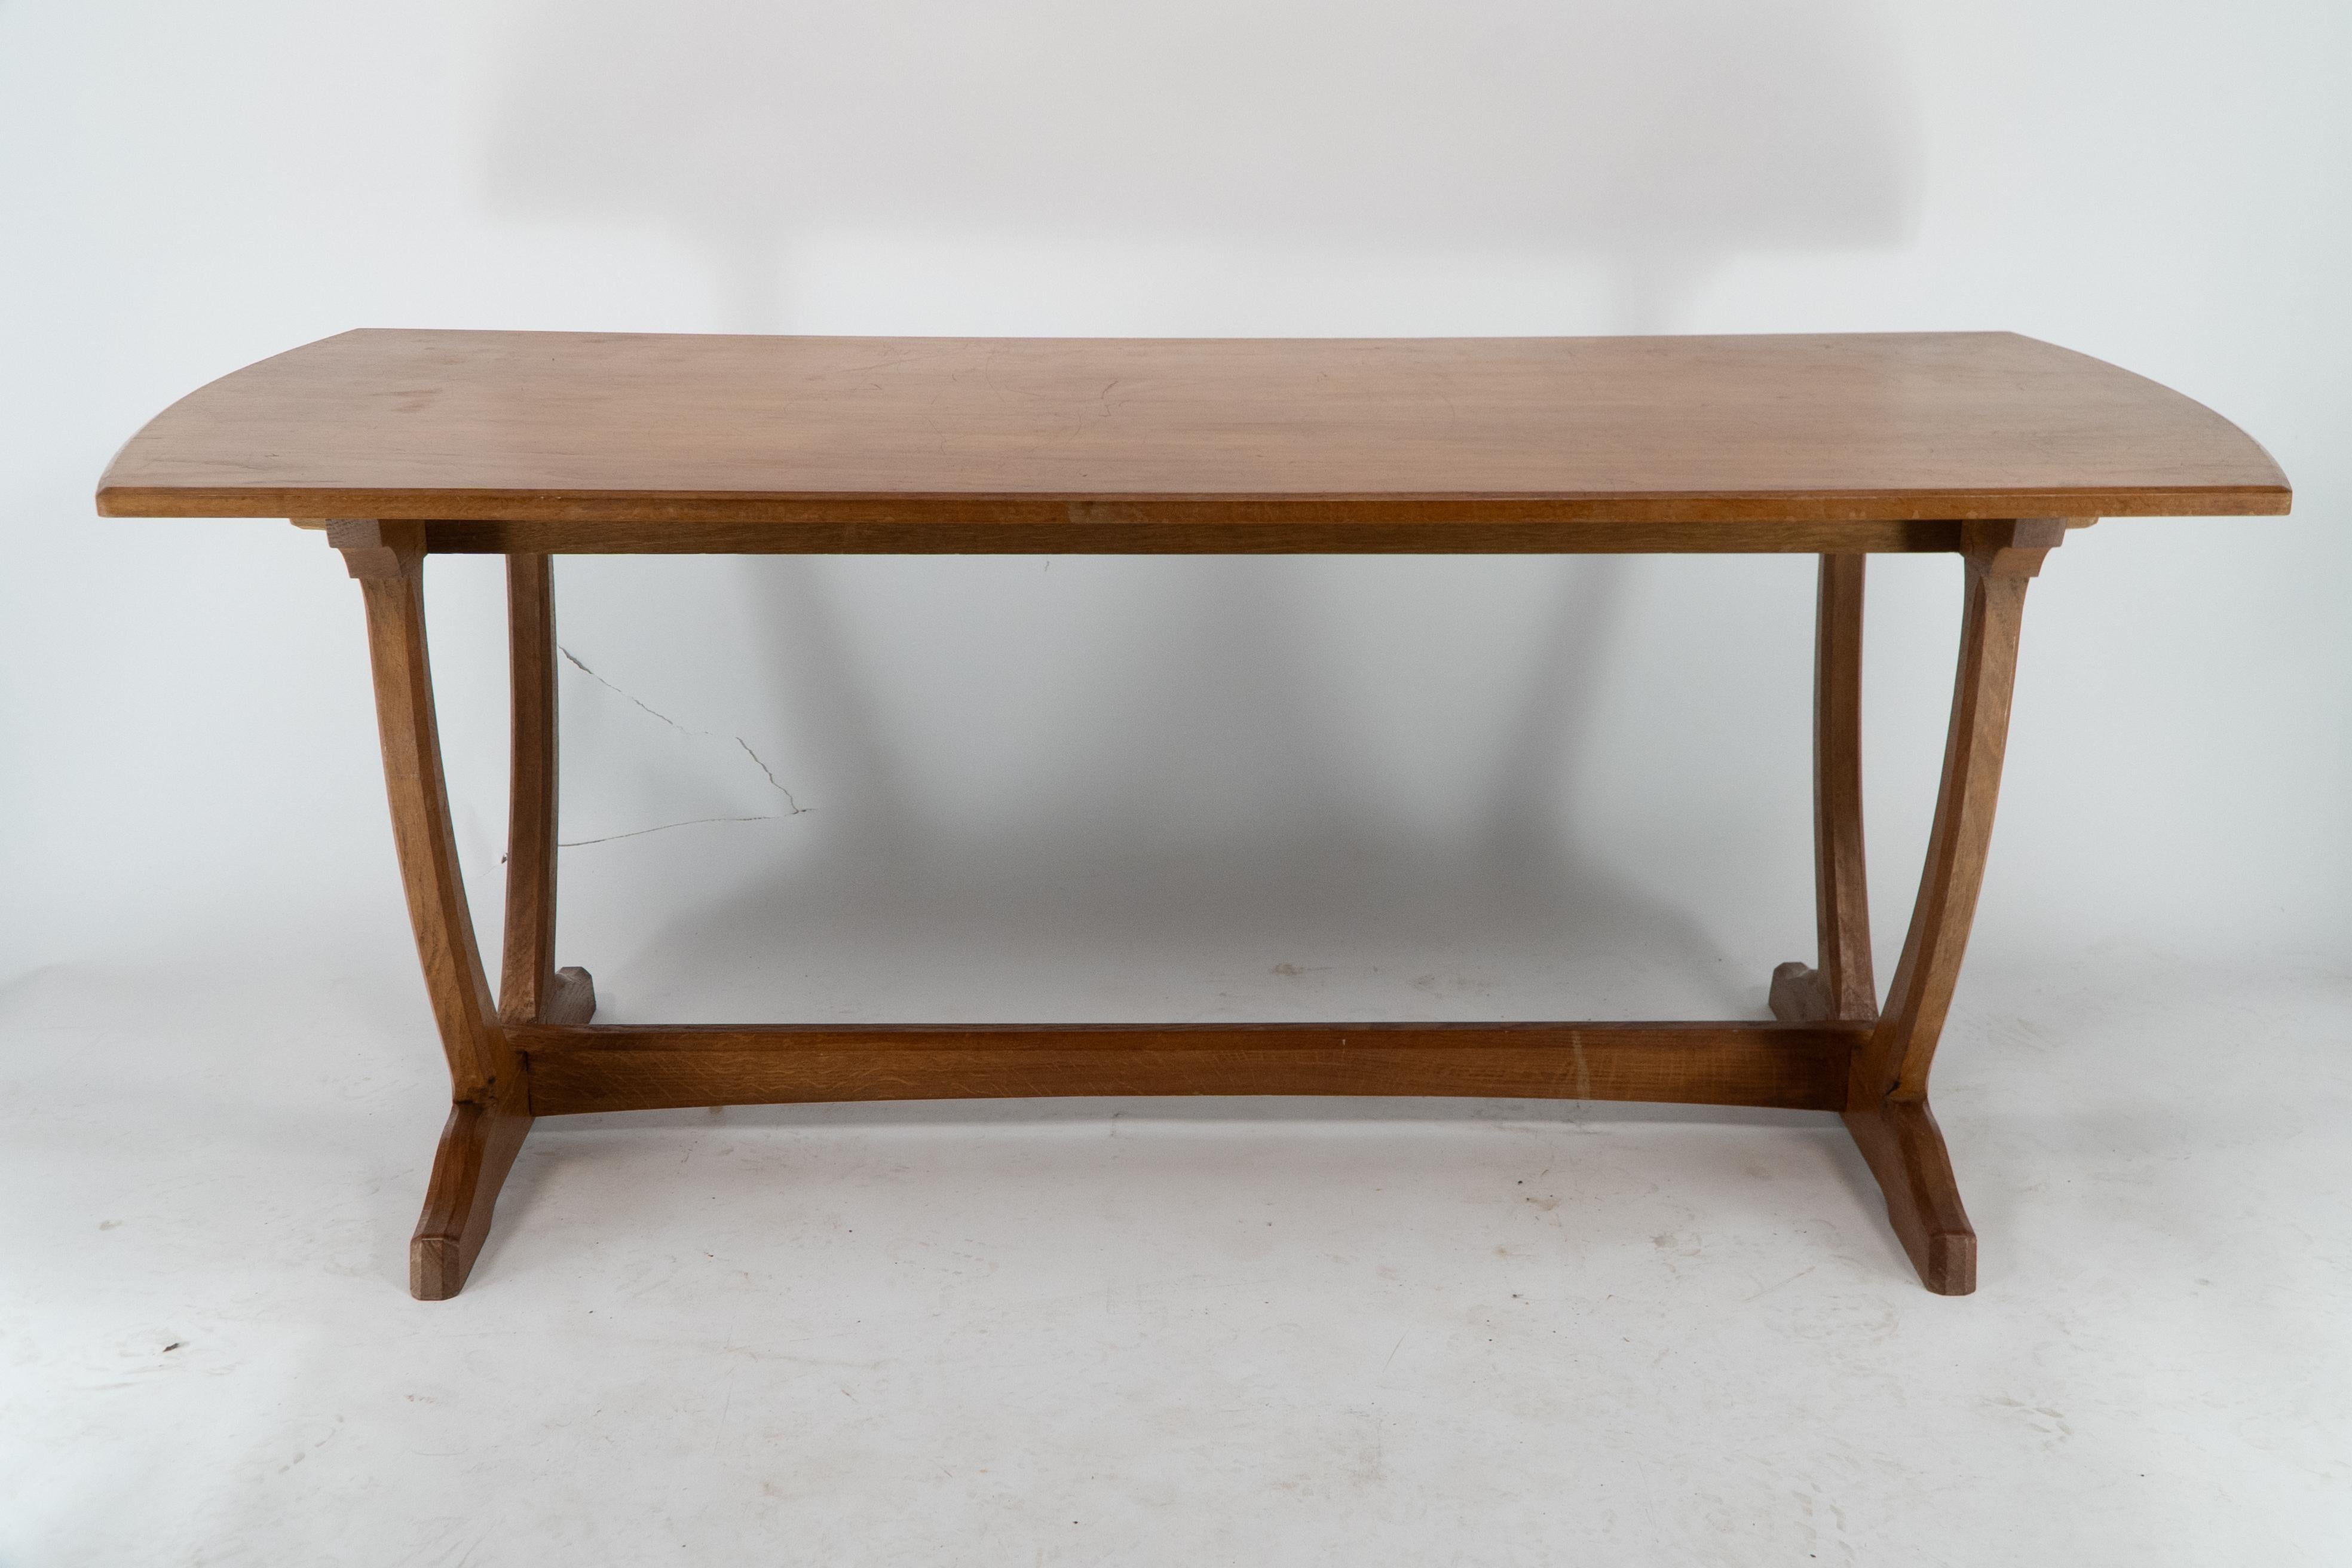 Edward Barnsley. Table basse en chêne de l'école Cotswold Arts & Crafts avec base en forme de U. Une table de qualité avec une construction à tenons et chevilles traversants.